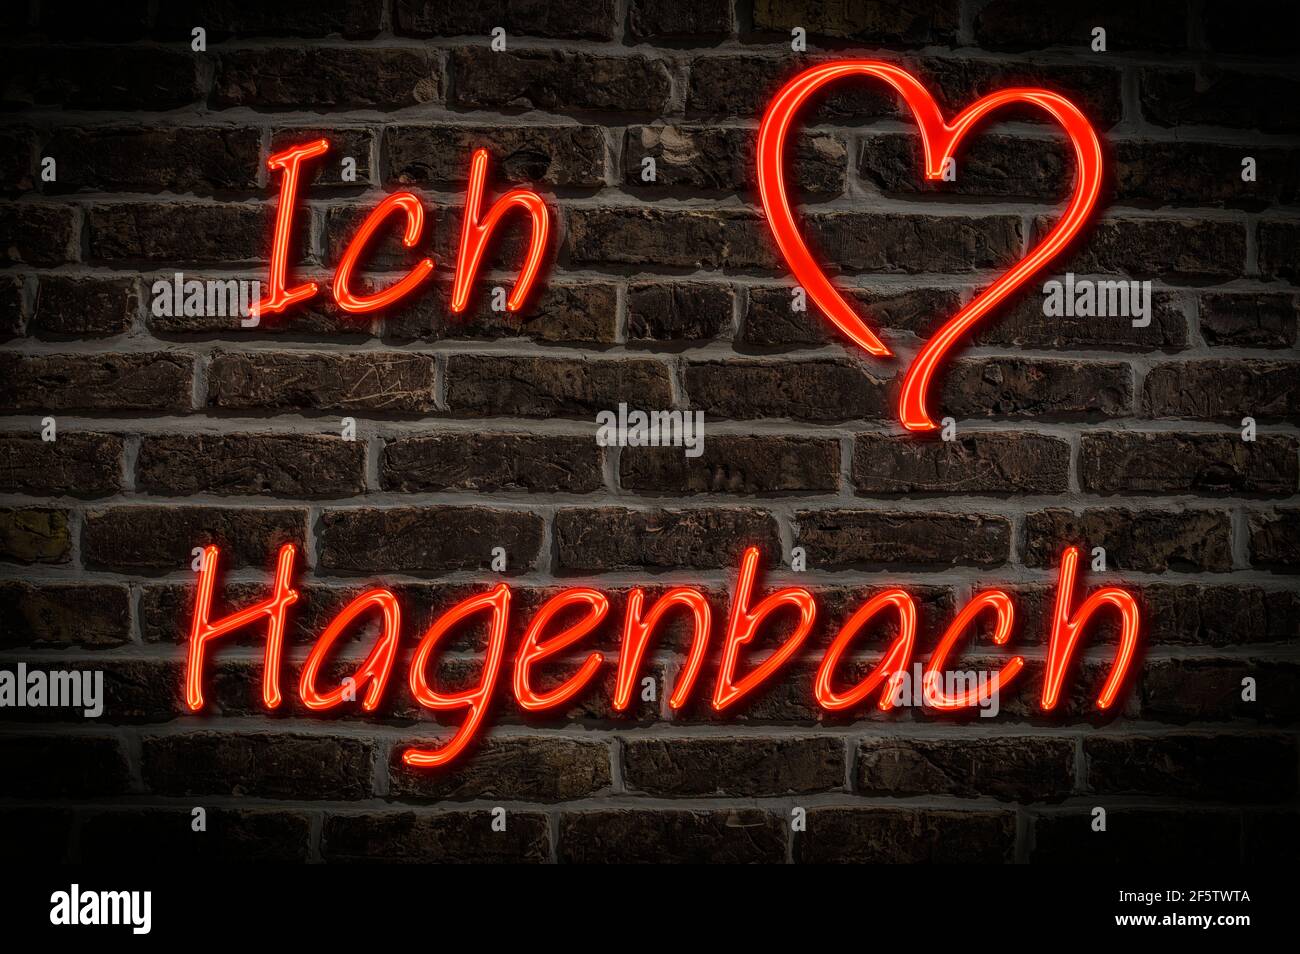 Leuchtreklame, Ich liebe Hagenbach, Rheinland-Pfalz, Deutschland, Europa | Illuminated advertising, I love Hagenbach, Rhineland-Palatinate, Germany, E Stock Photo